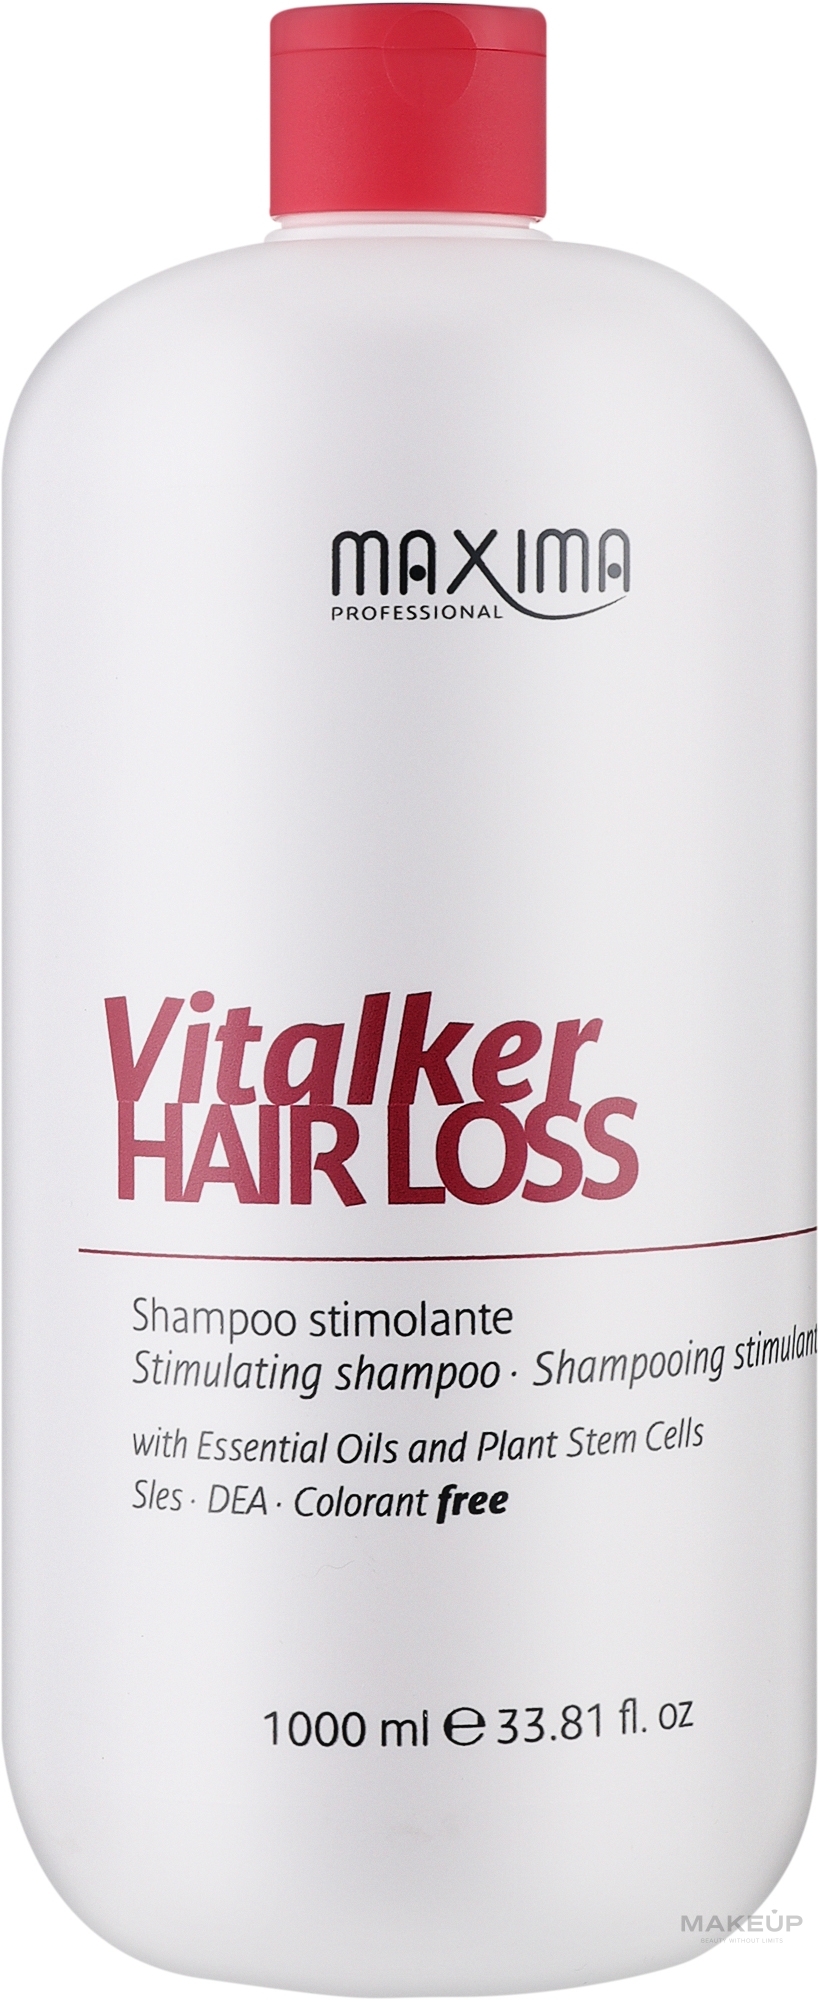 Maxima Vitalker Hair Loss Stimulating Shampoo - Стимулювальний шампунь проти випадіння волосся — фото 1000ml